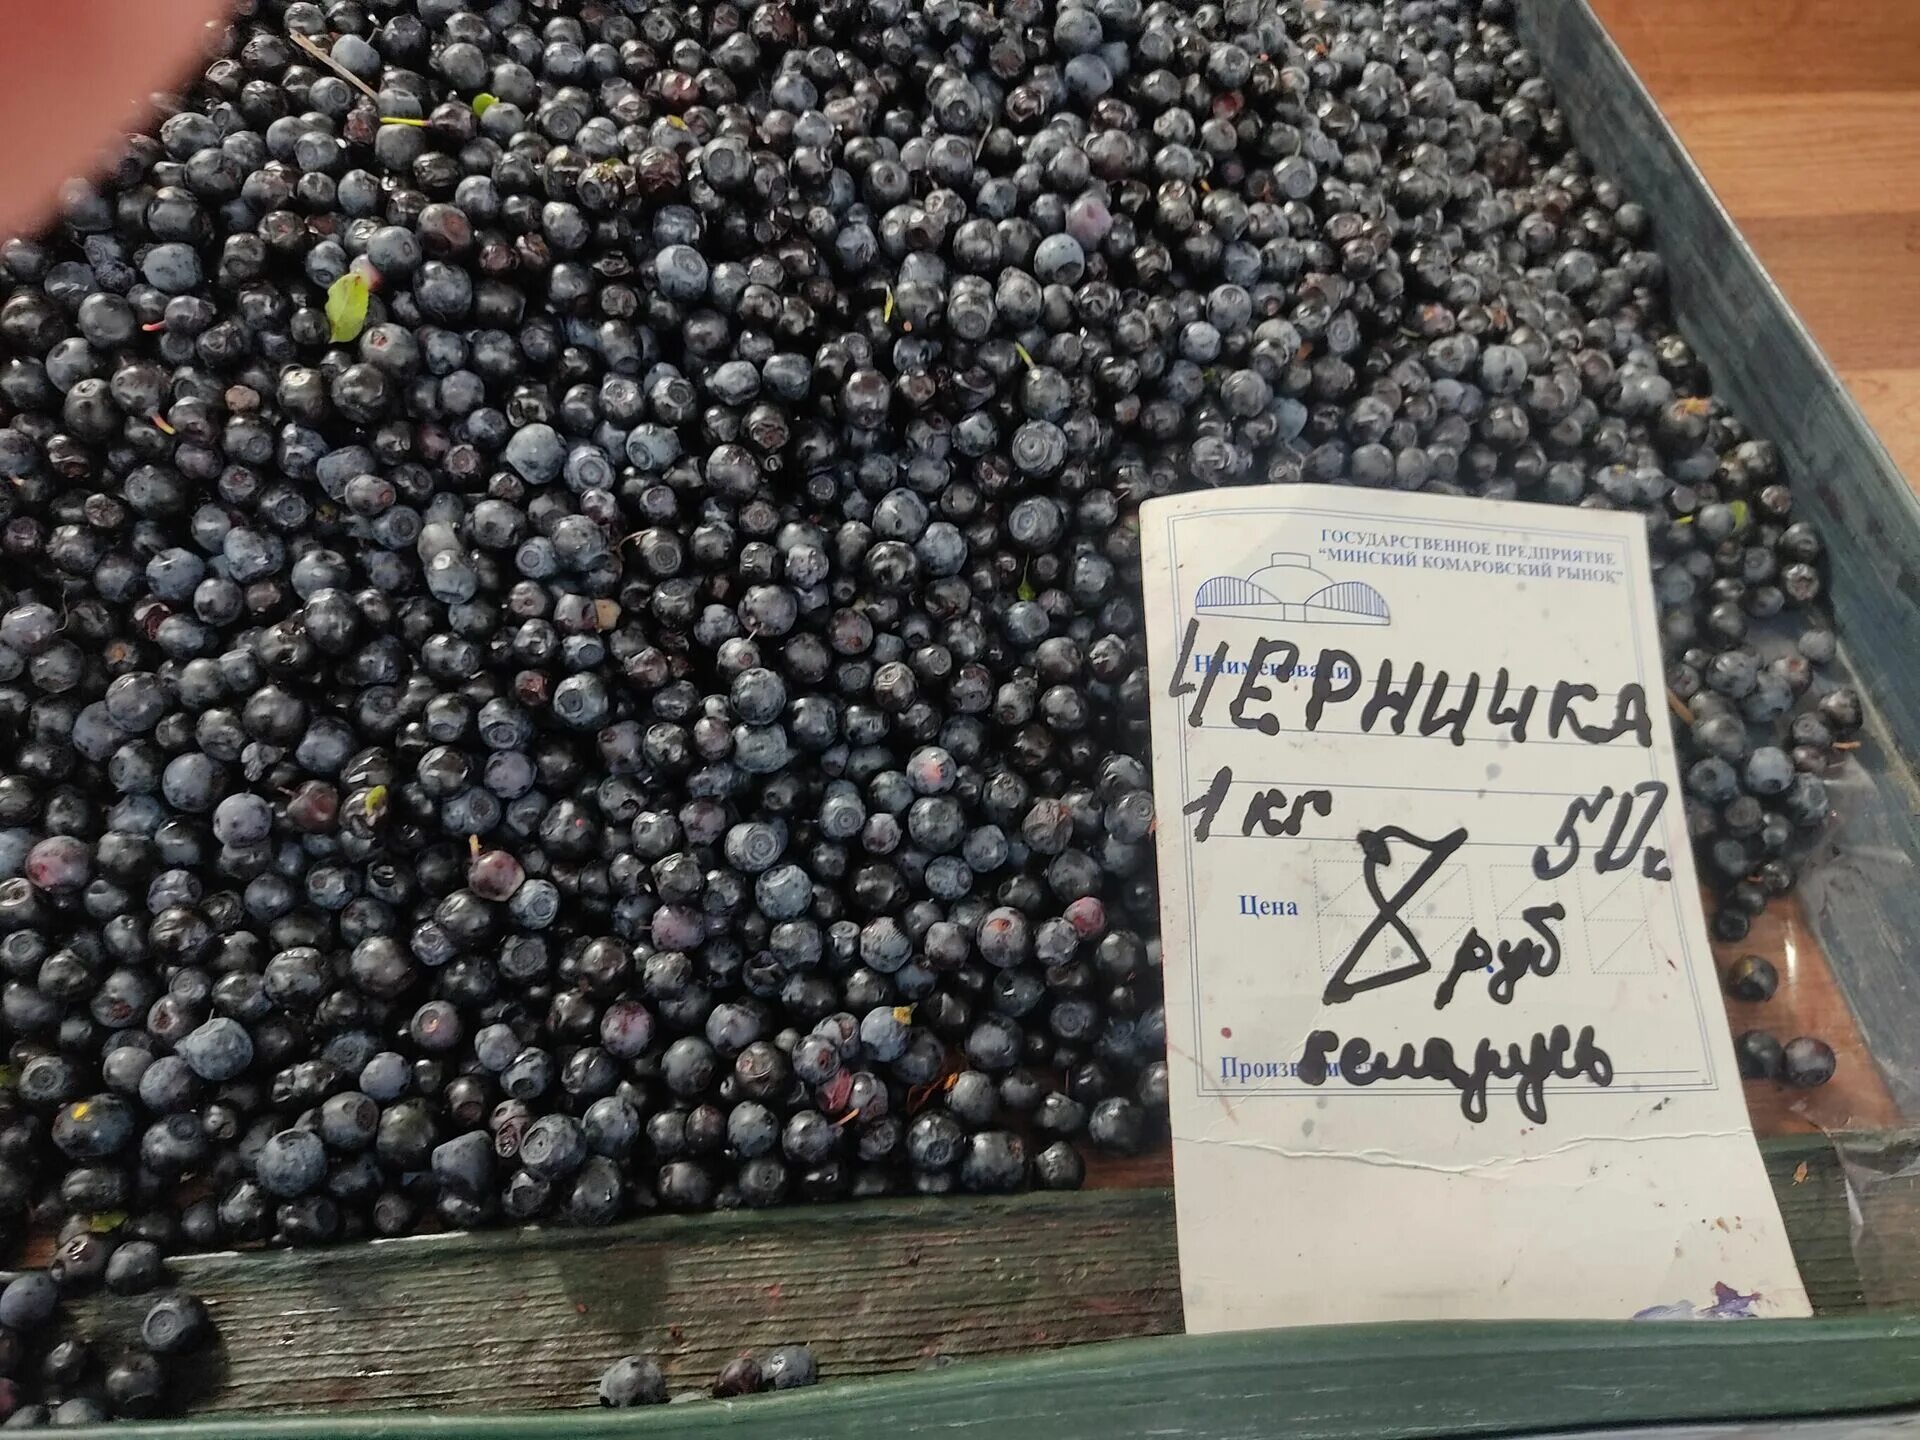 Черника на базаре. 1 Кг черники. Белорусские ягоды. Сколько стоит черника на рынке. Черничный берег